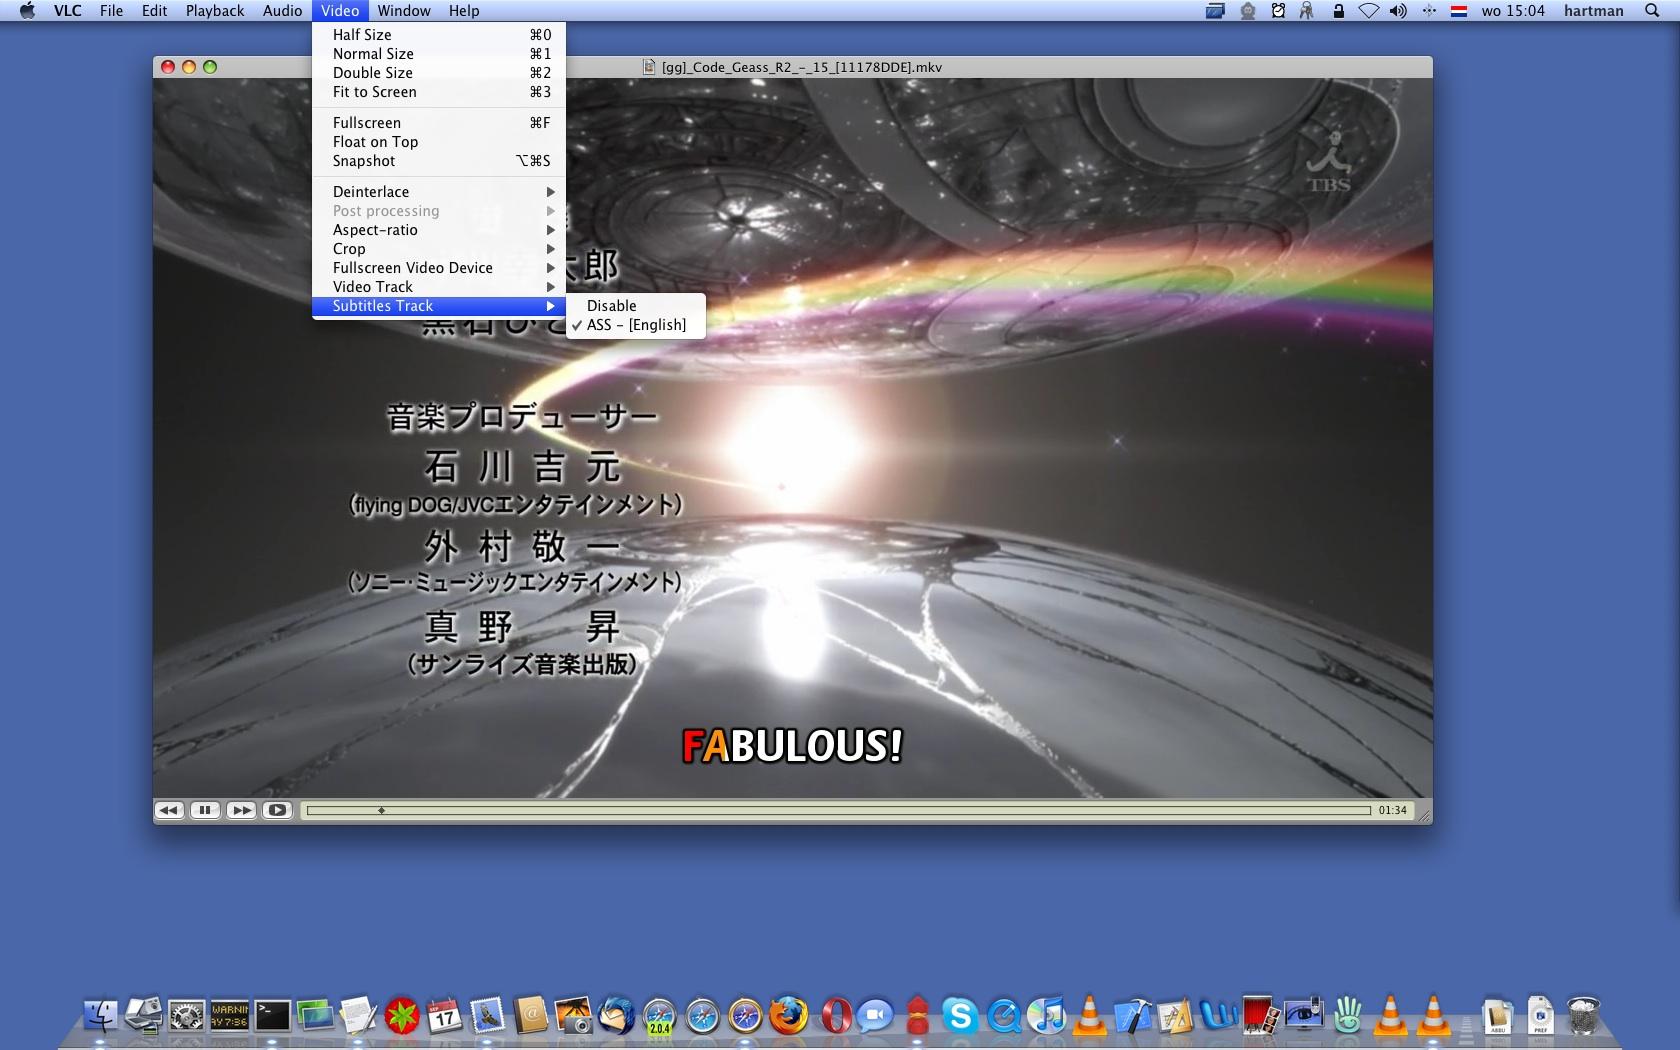 VLC Media Player 1.0.0 RC2 les nouveautés